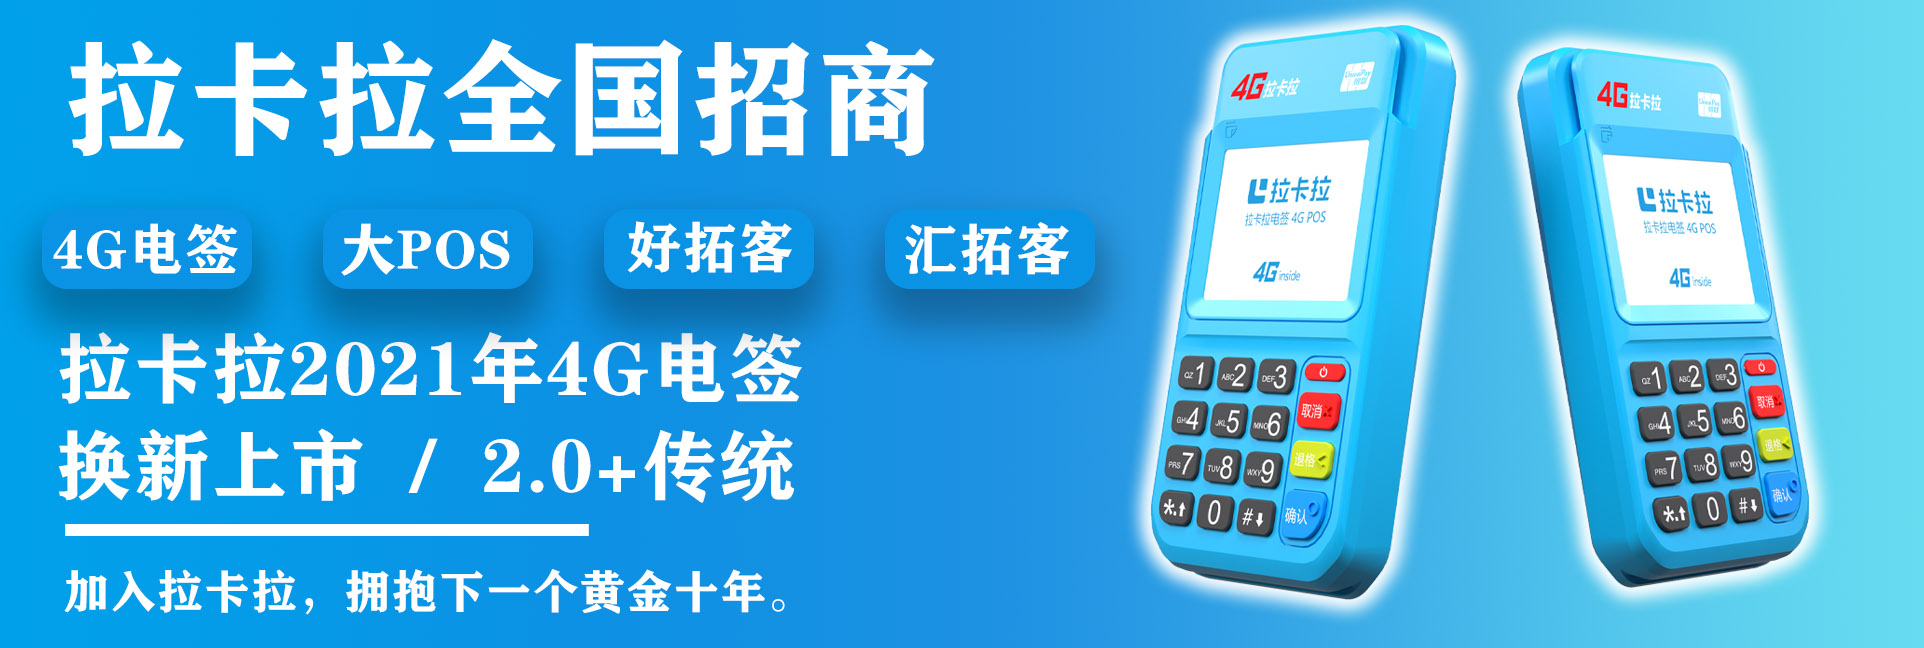 郑州拉卡拉2G商户注销申请流程